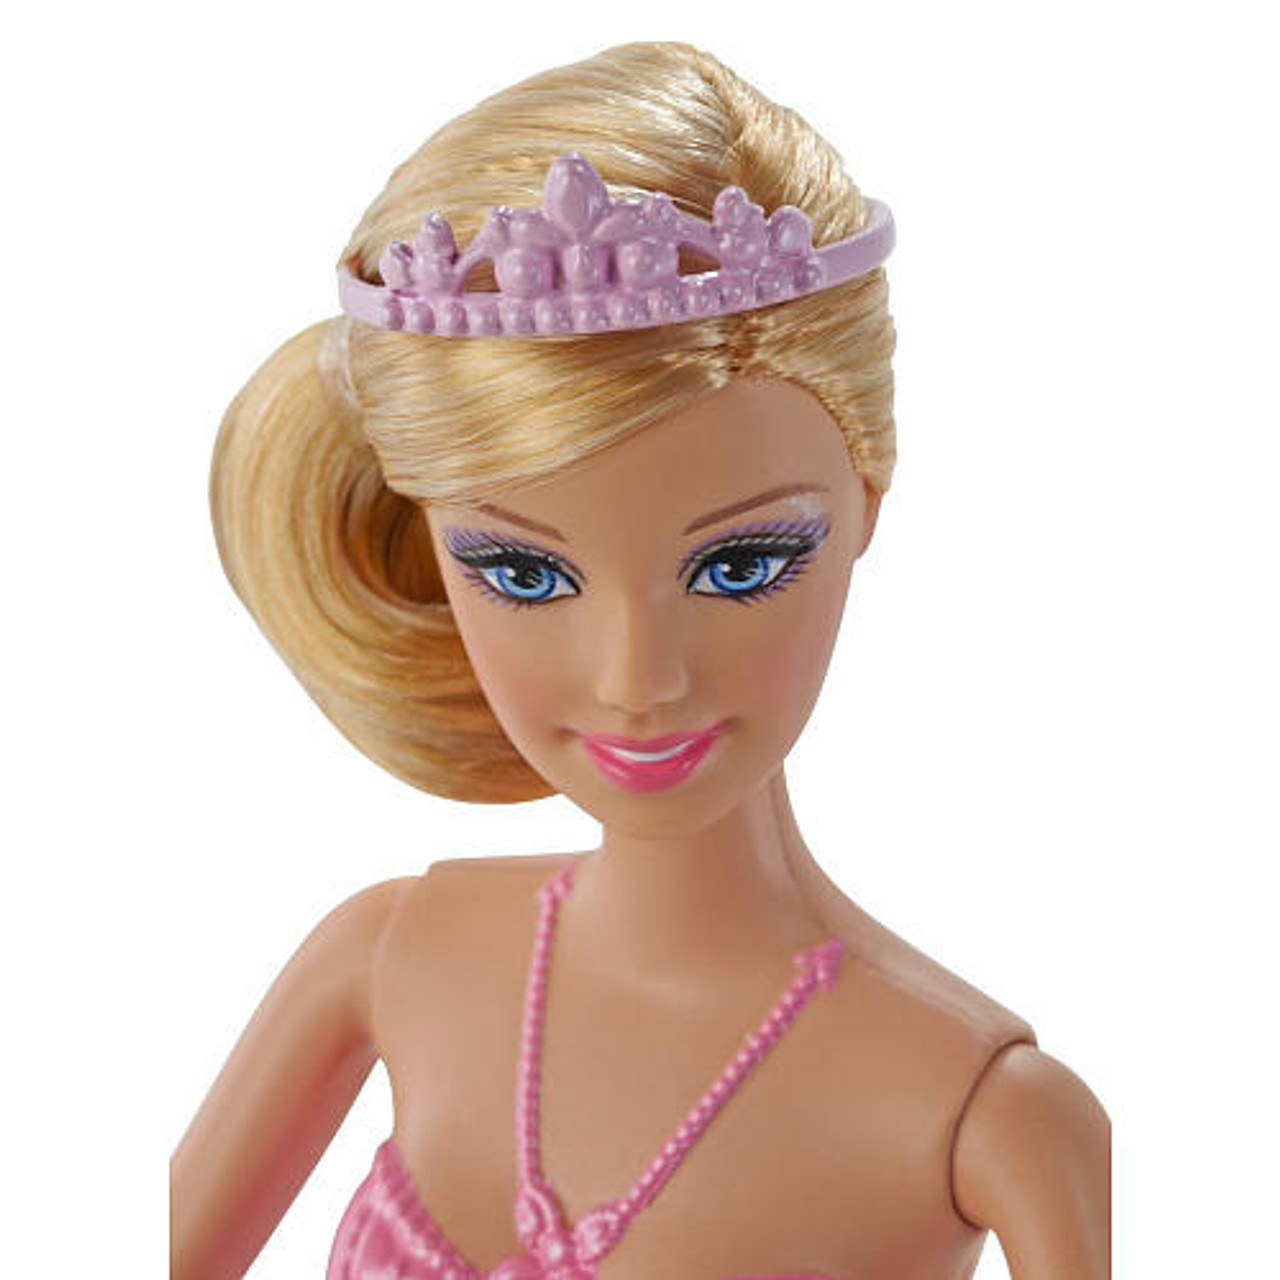 barbie fairytale ballerina doll